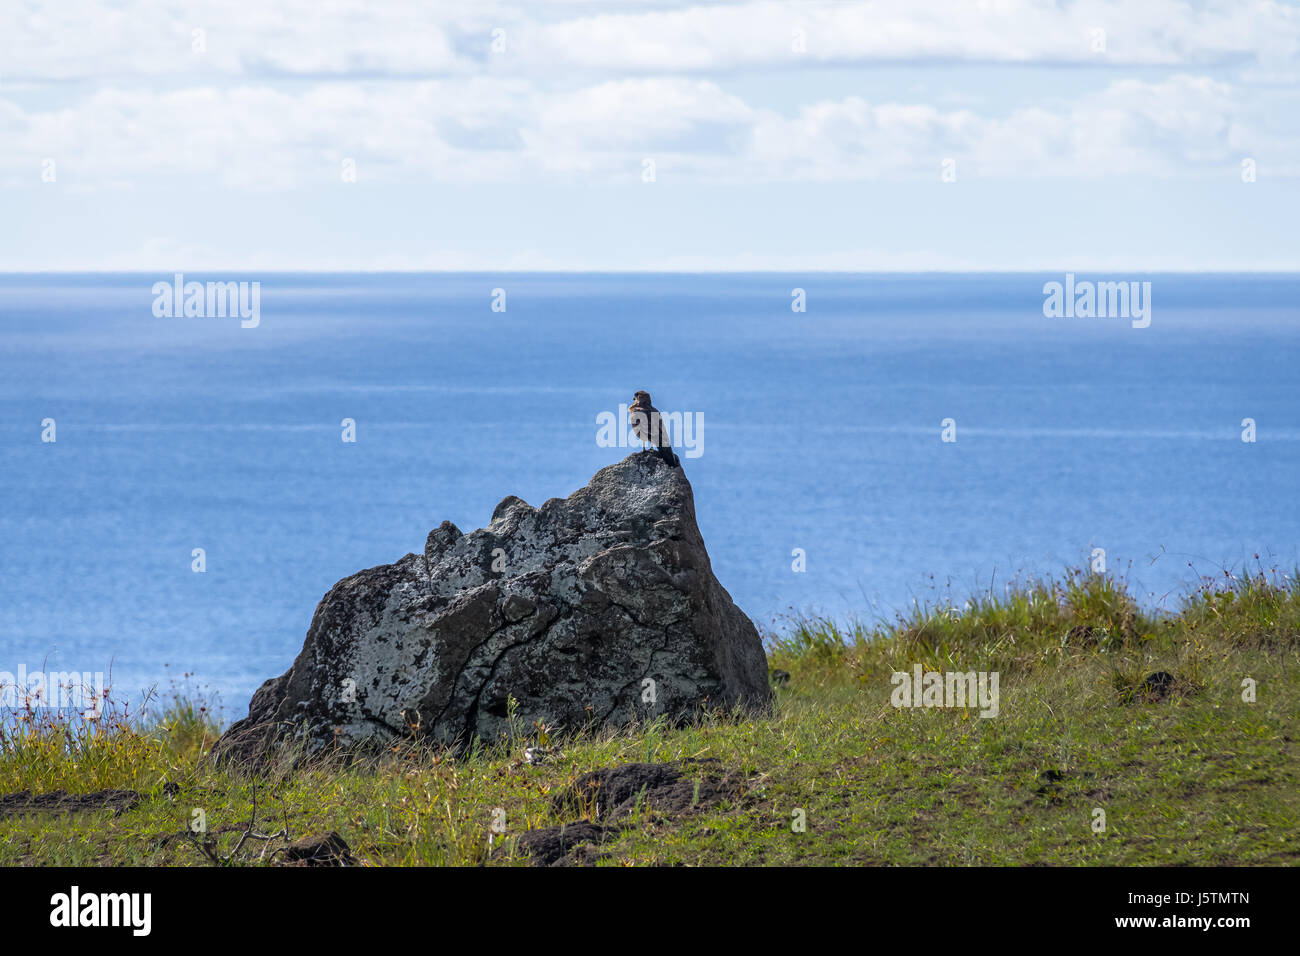 Chimango caracara falcon - Isola di Pasqua, Cile Foto Stock